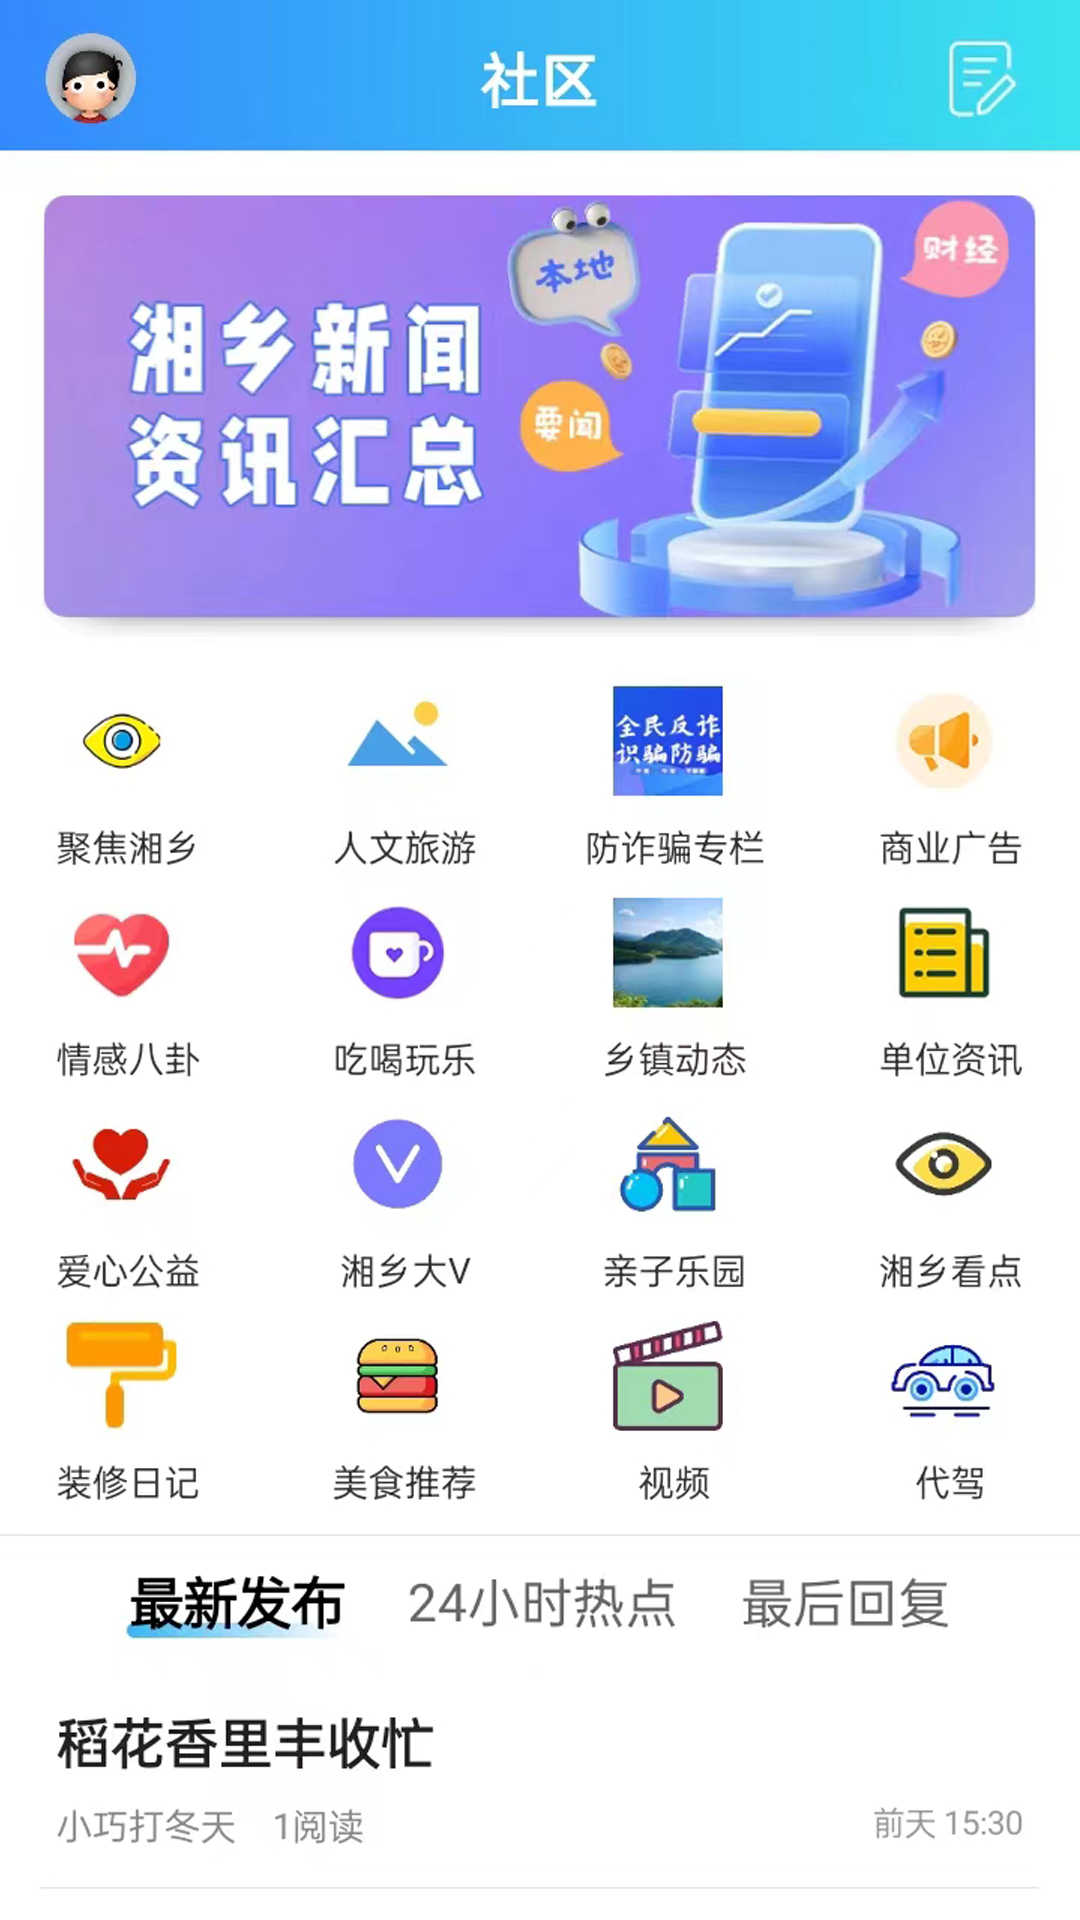 振讯龙城app下载,振讯龙城app官方版 v2.1